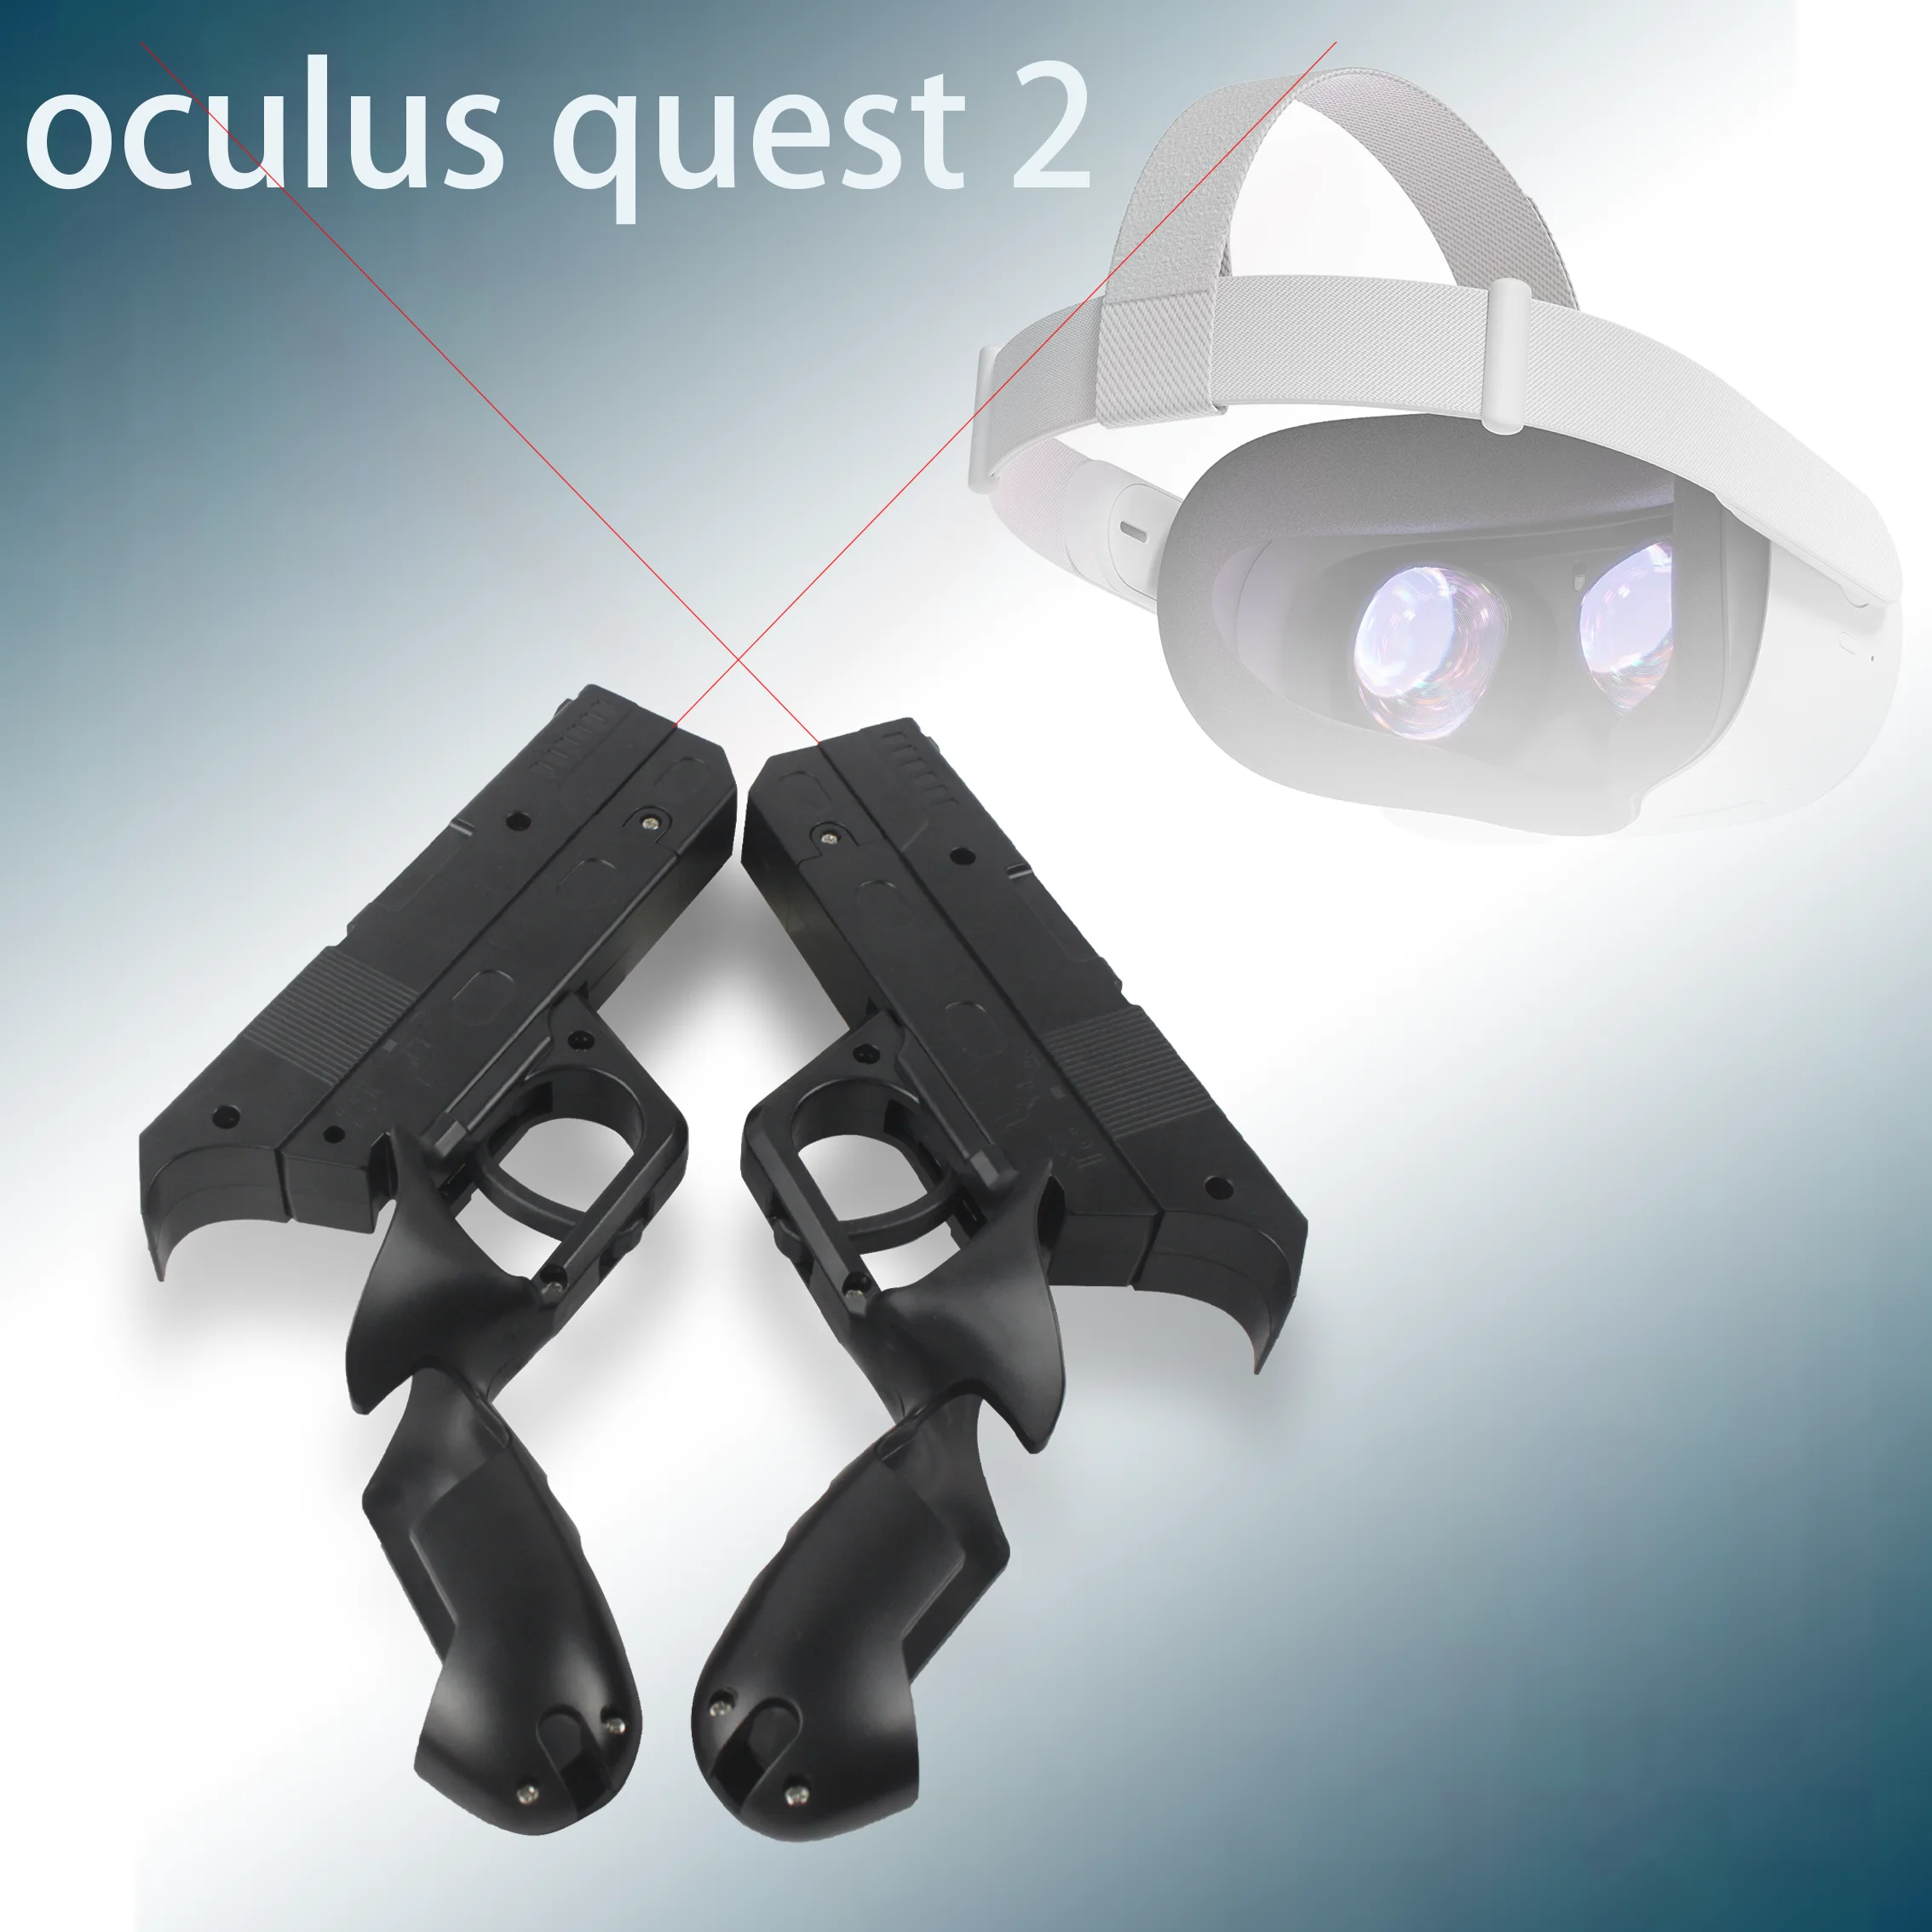 Em promoção! Vr Jogos De Tiro De Pistola Para O Oculus Quest 2